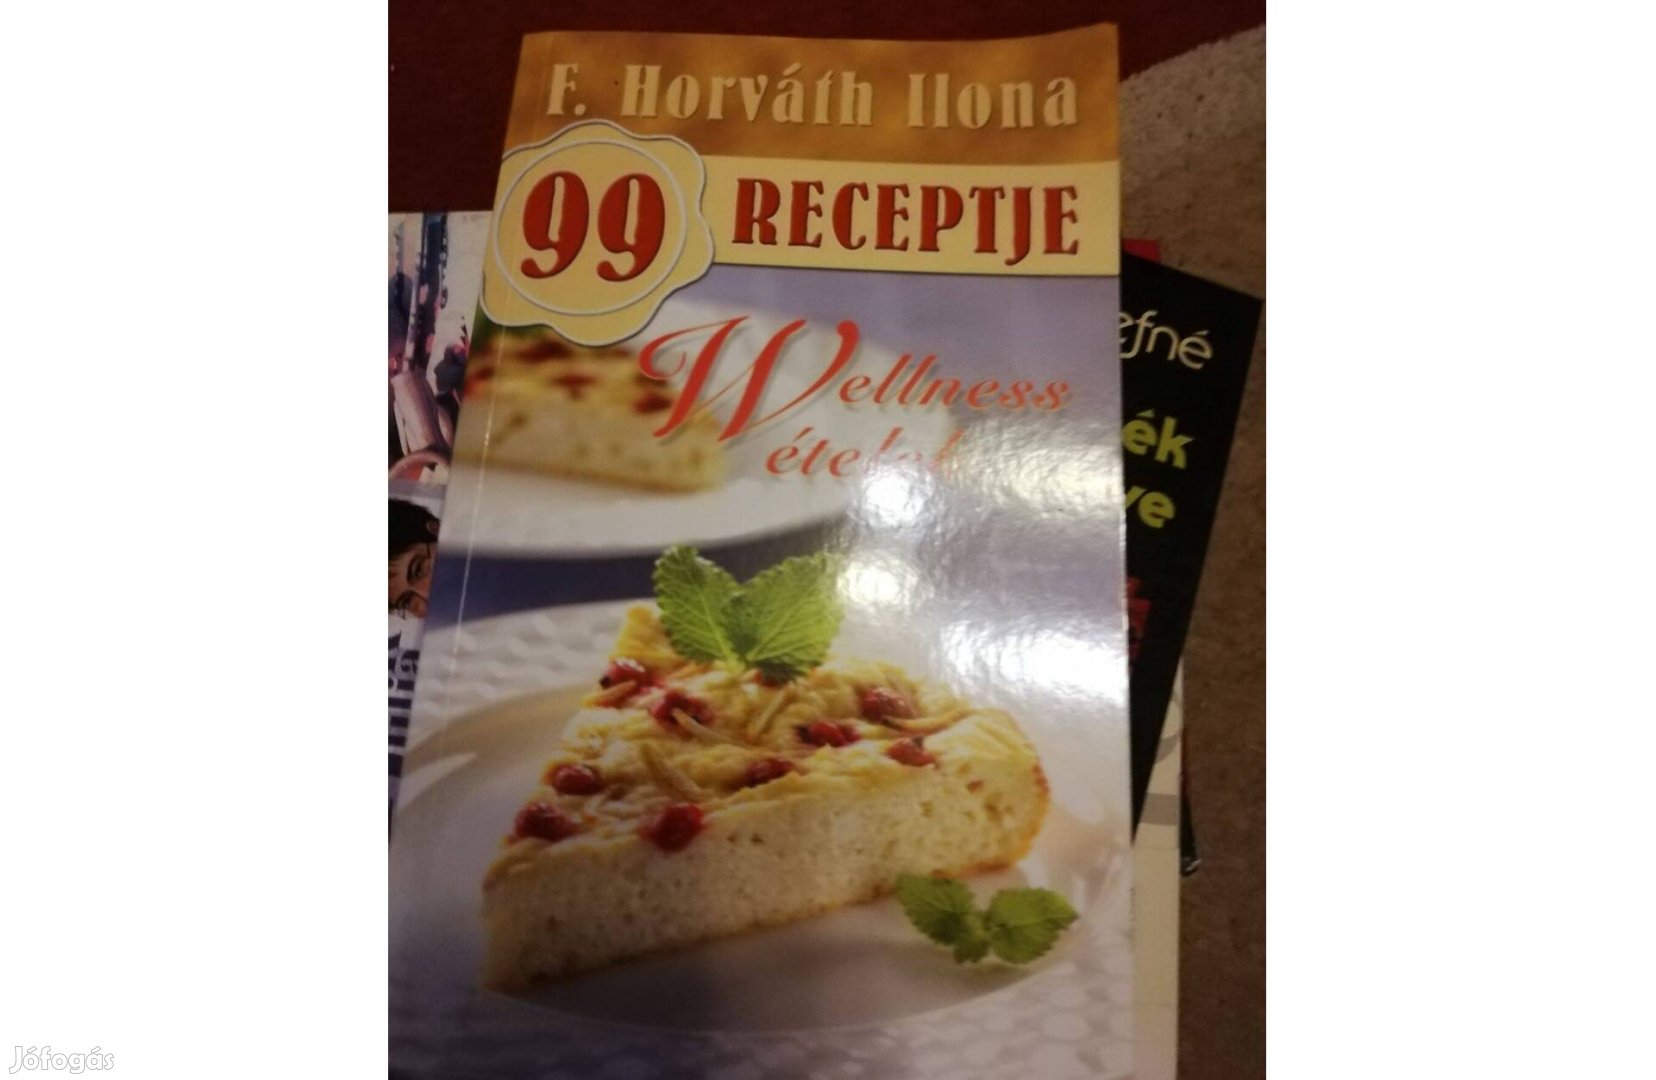 F. Horváth Ilona 99 receptje Wellness ételek c. könyv eladó